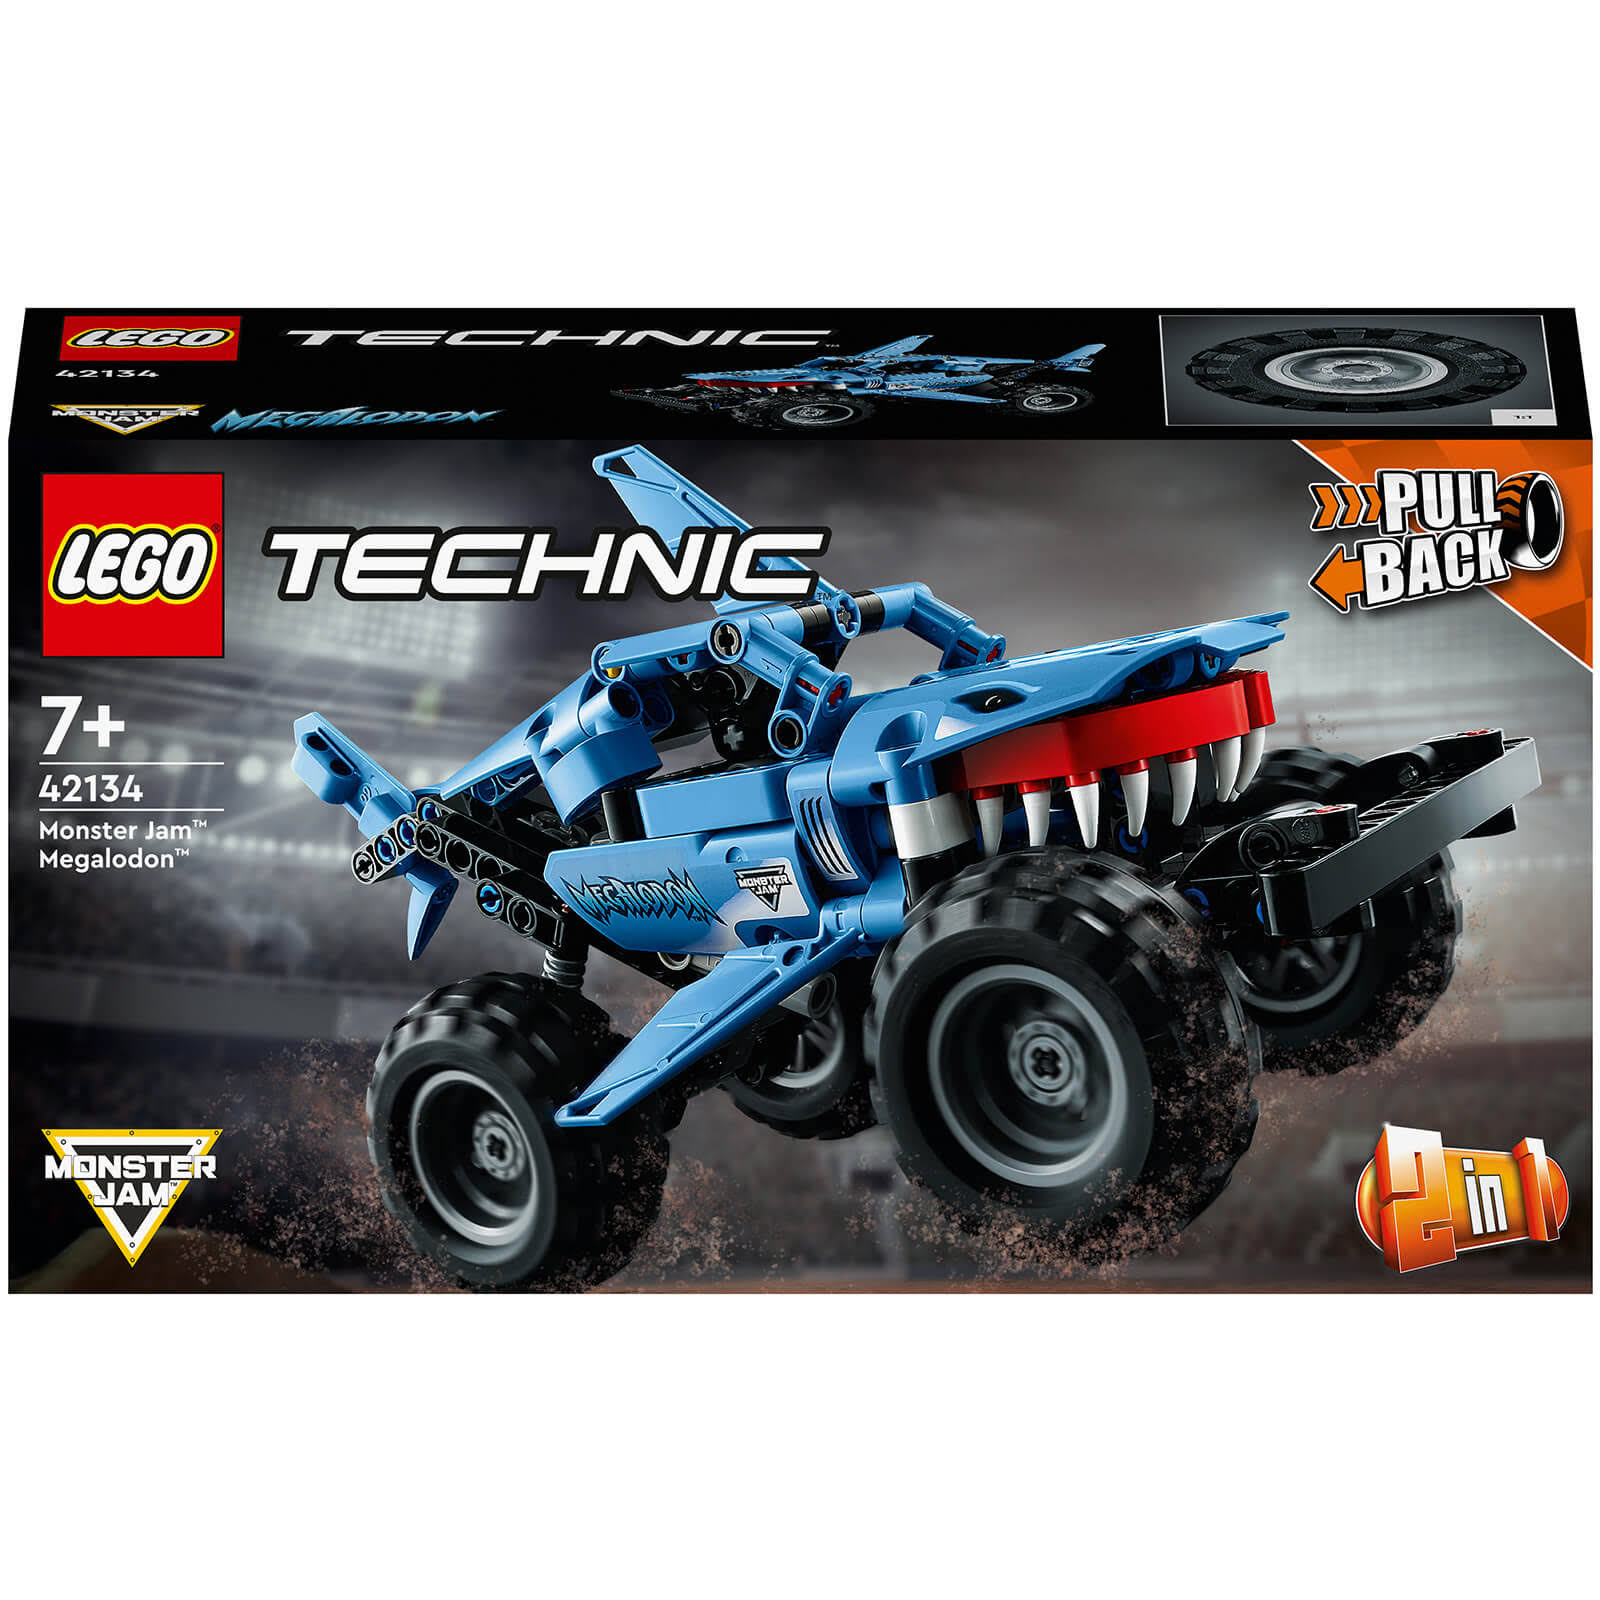 LEGO Technic: Monster Jam Megalodon (42134)